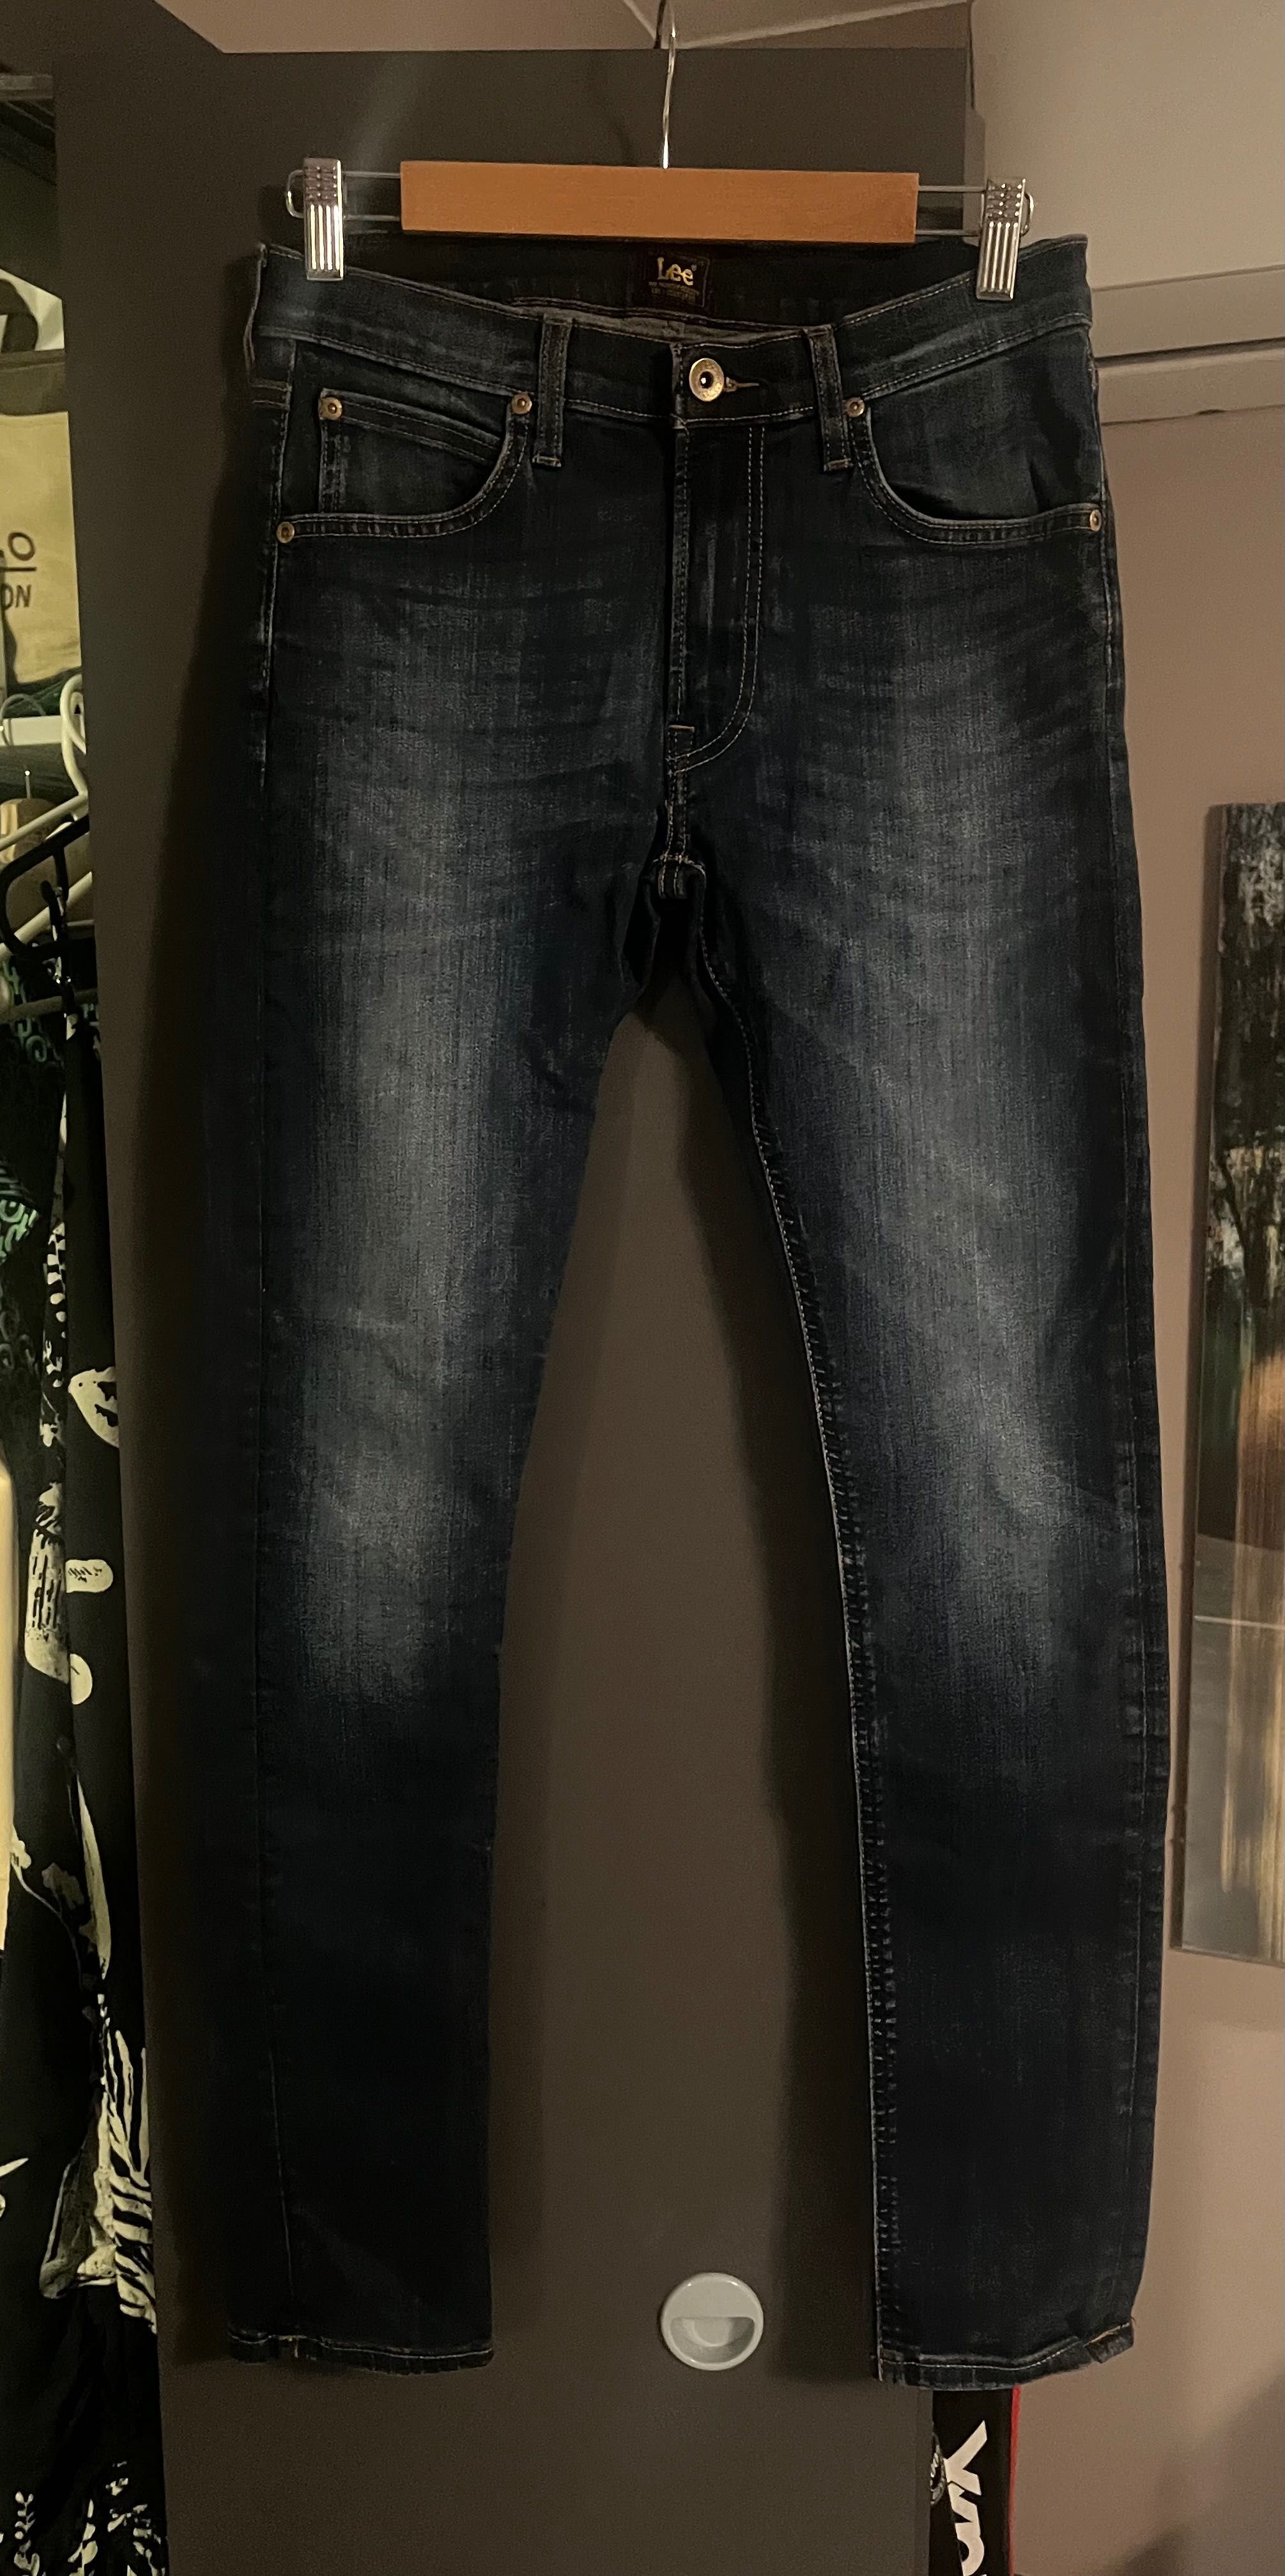 Spodnie męskie/ chłopięce jeans Lee